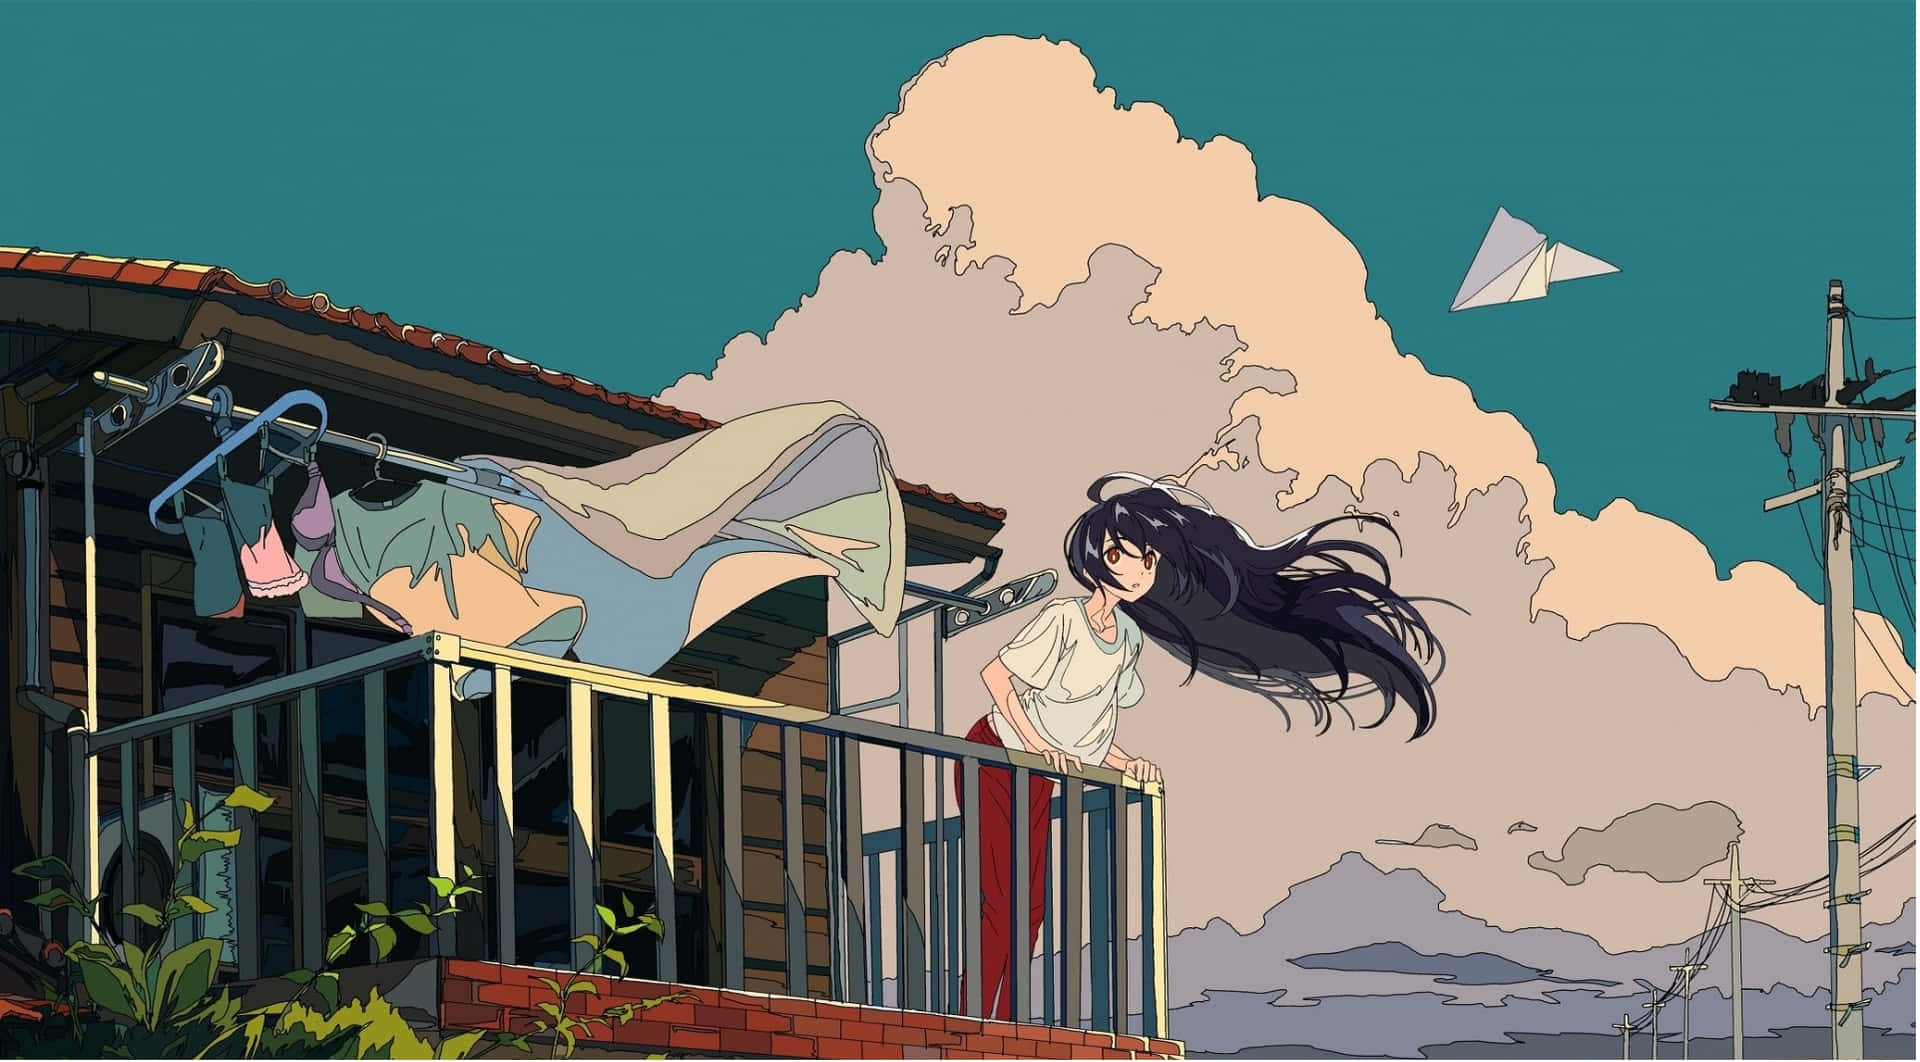 Eineverspielte Anime-ästhetik-wallpaper Mit Zwei Charakteren Während Eines Lebendigen Sonnenuntergangs.